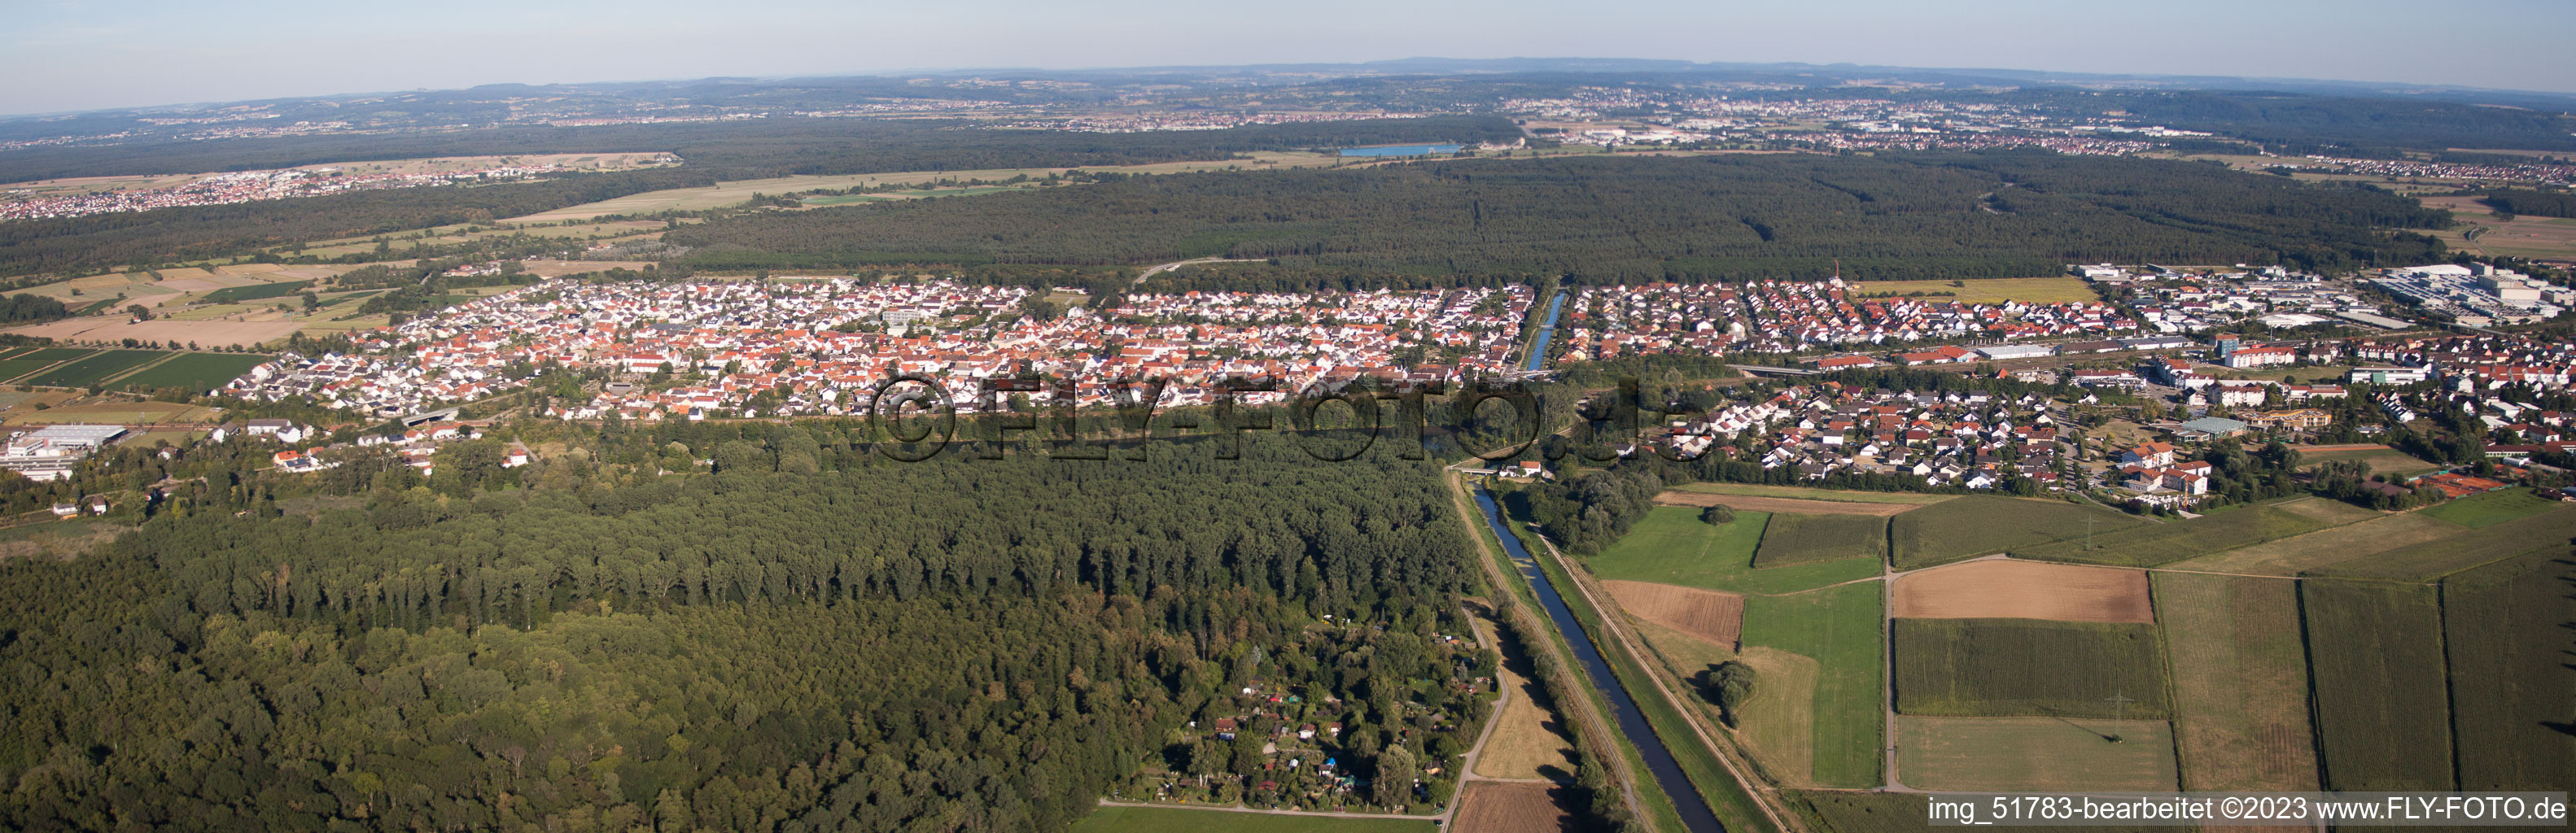 Vue aérienne de Panorama - perspective du quartier du Neudorf à le quartier Graben in Graben-Neudorf dans le département Bade-Wurtemberg, Allemagne